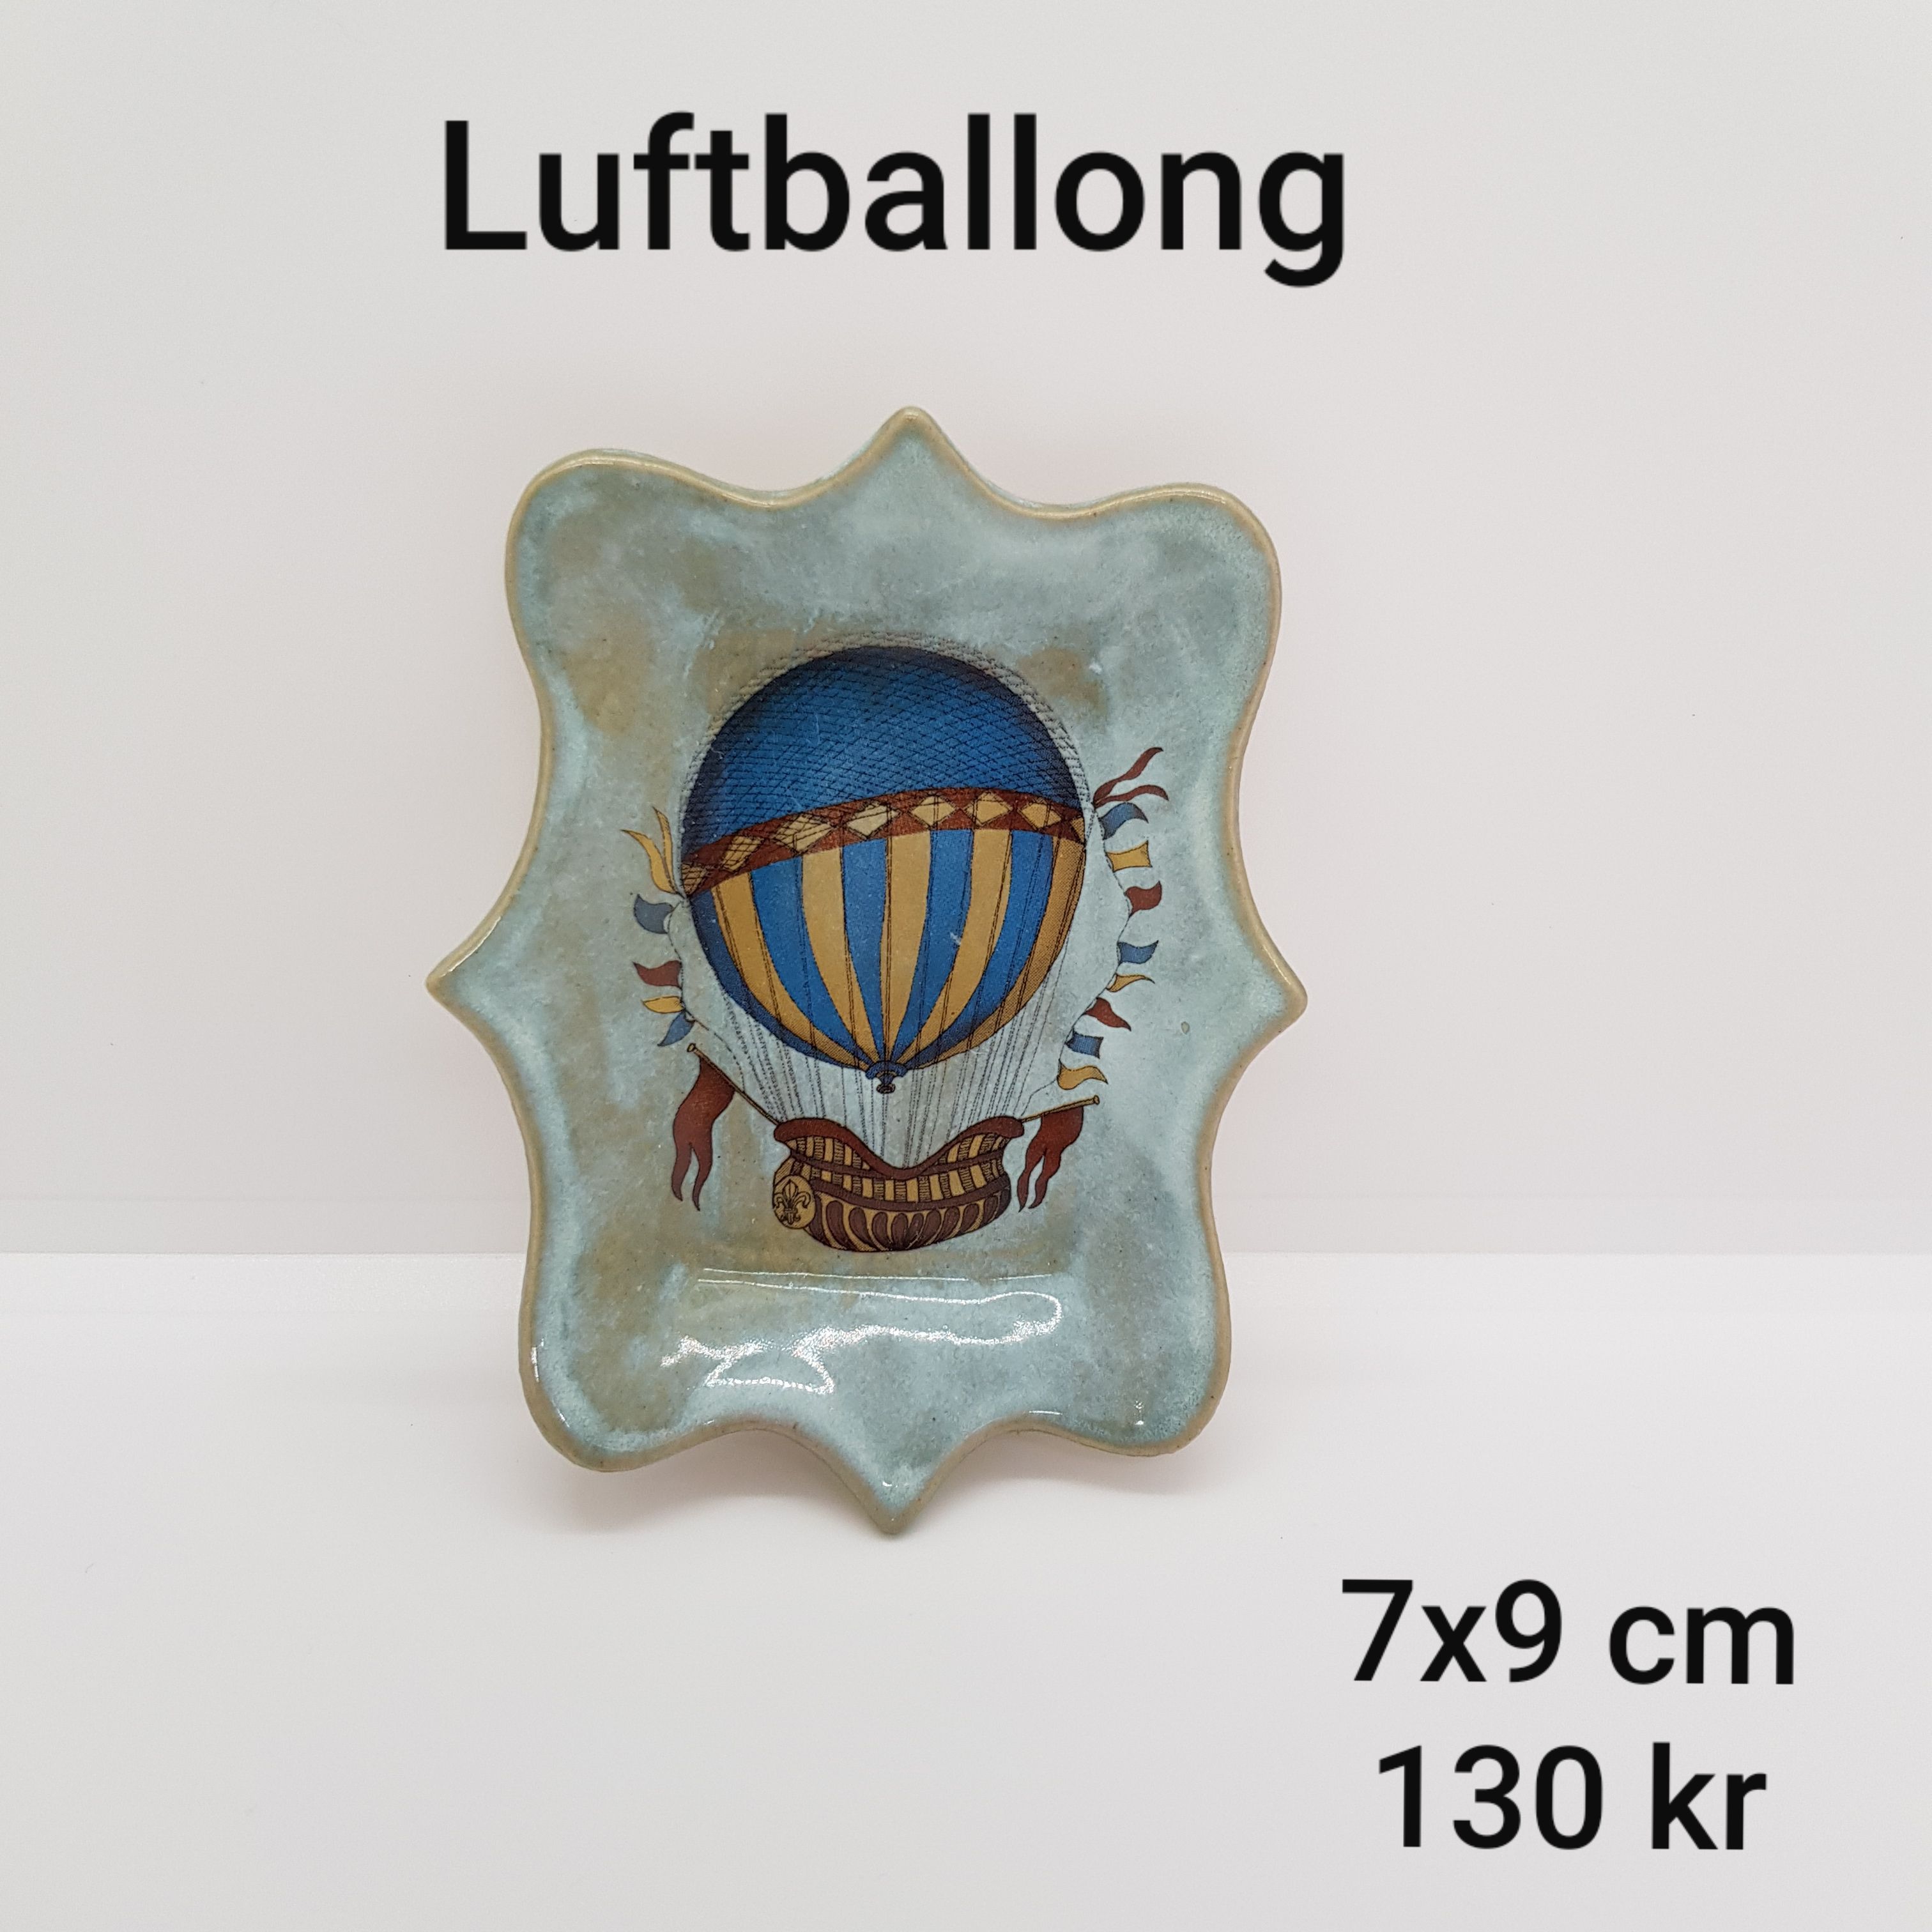 a luftballong